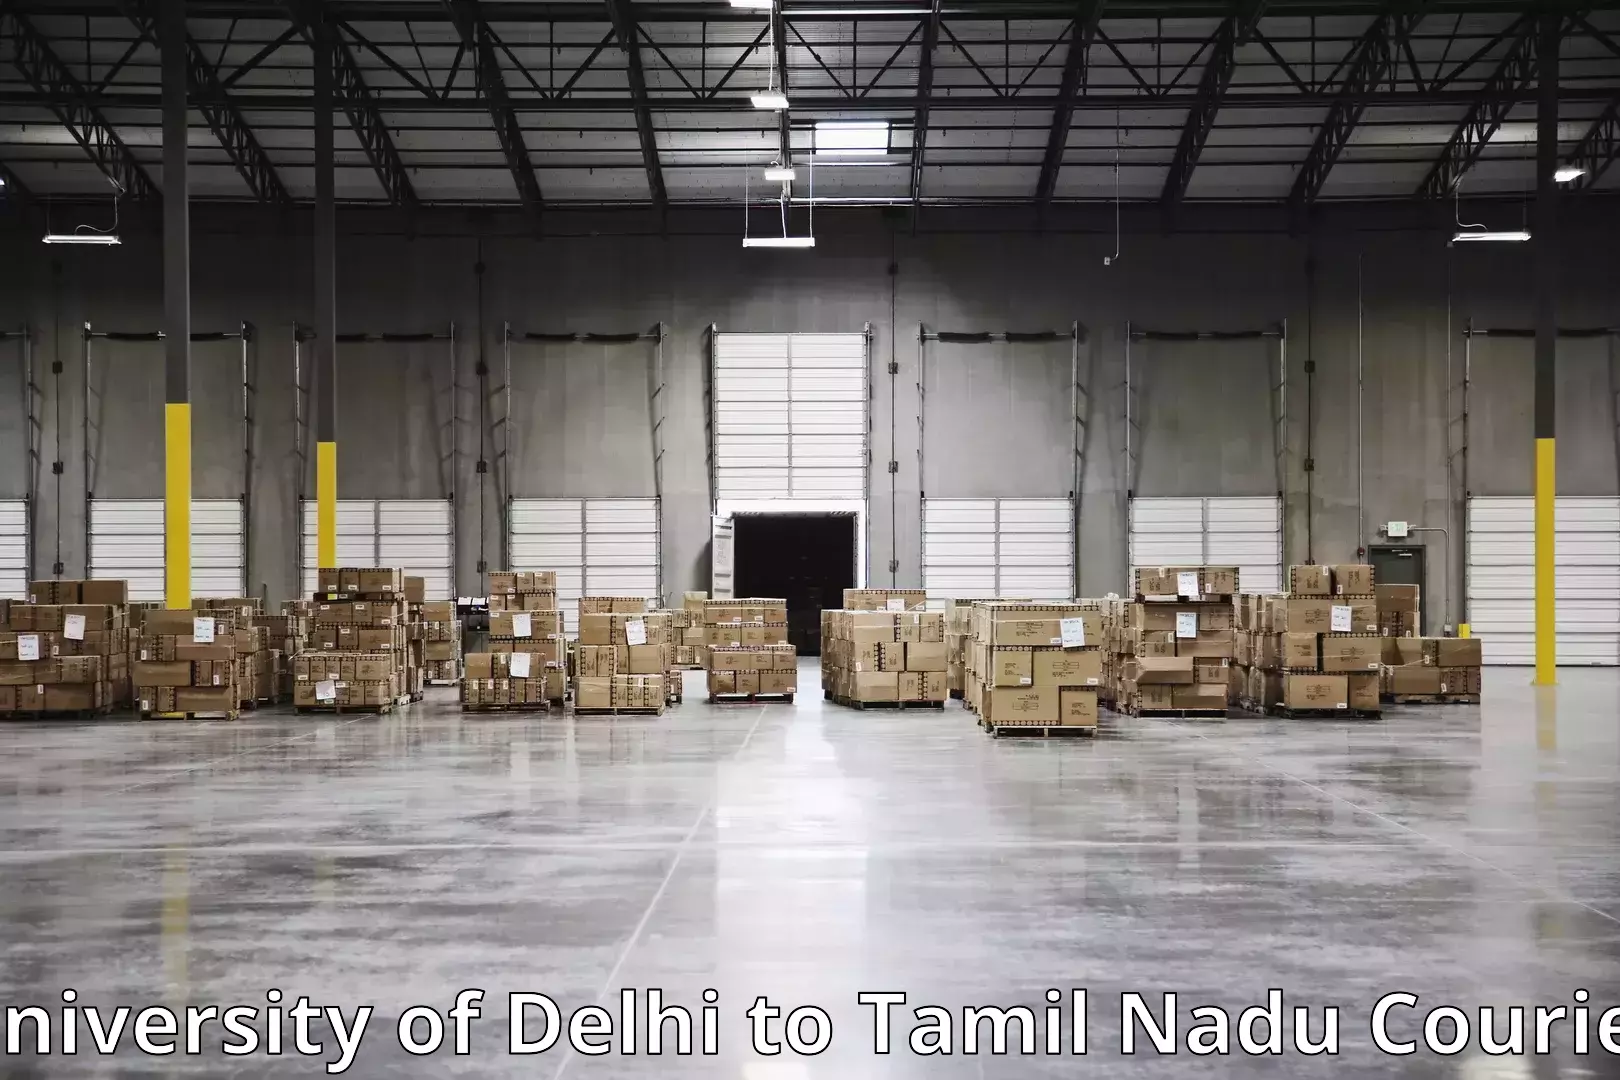 Furniture logistics University of Delhi to The Gandhigram Rural Institute